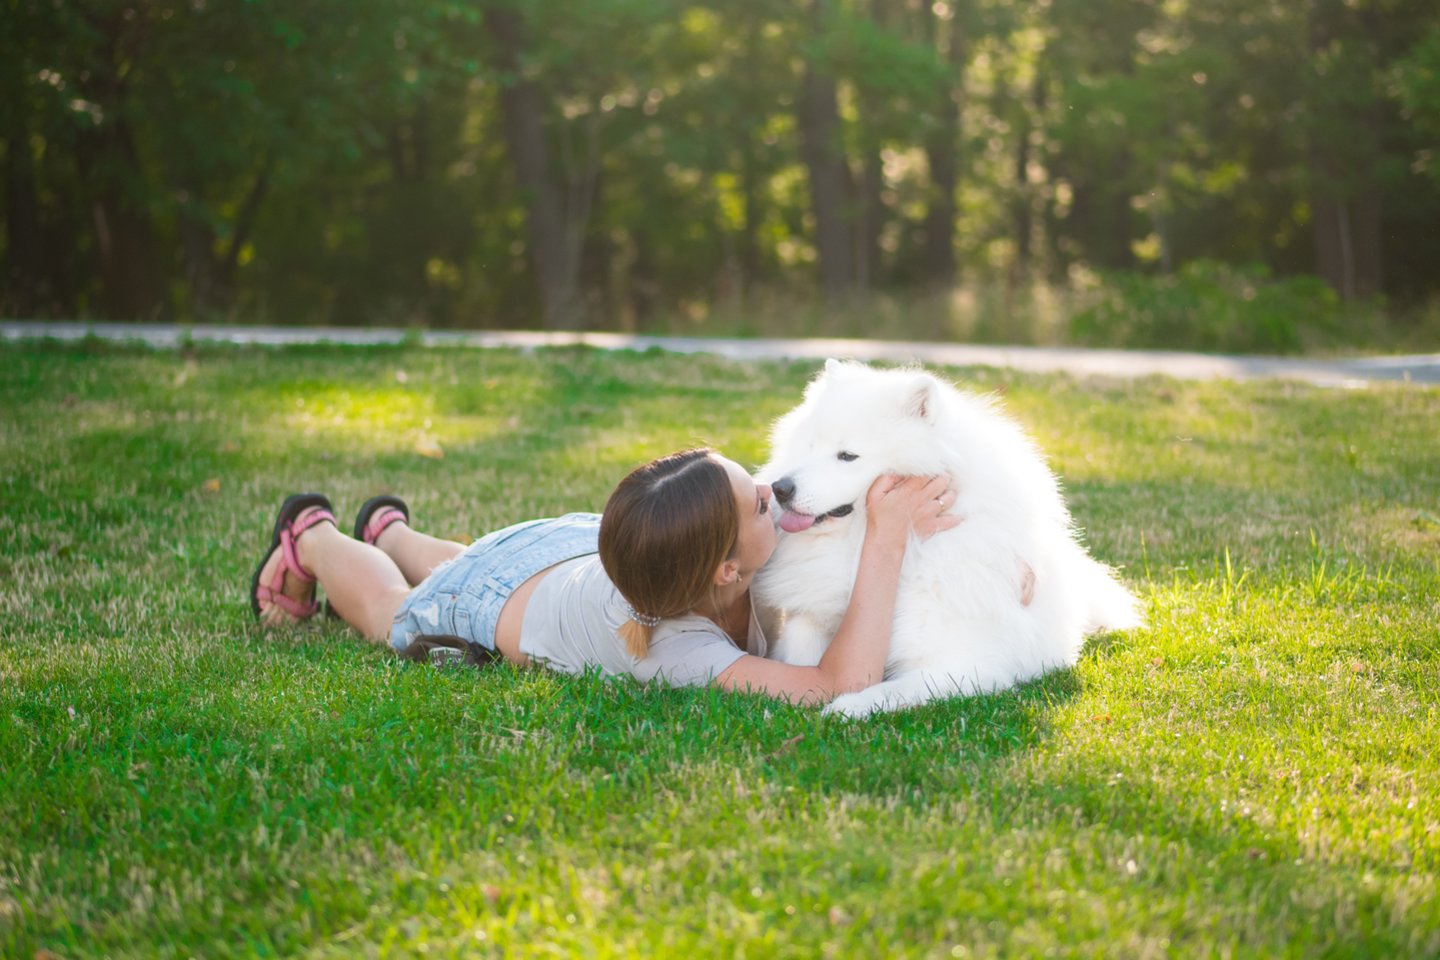  Į šunis jų šeimininkai linkę reaguoti lygiai taip pat, kaip mamos į savo vaikus. <br> 123rf.com nuotr. 